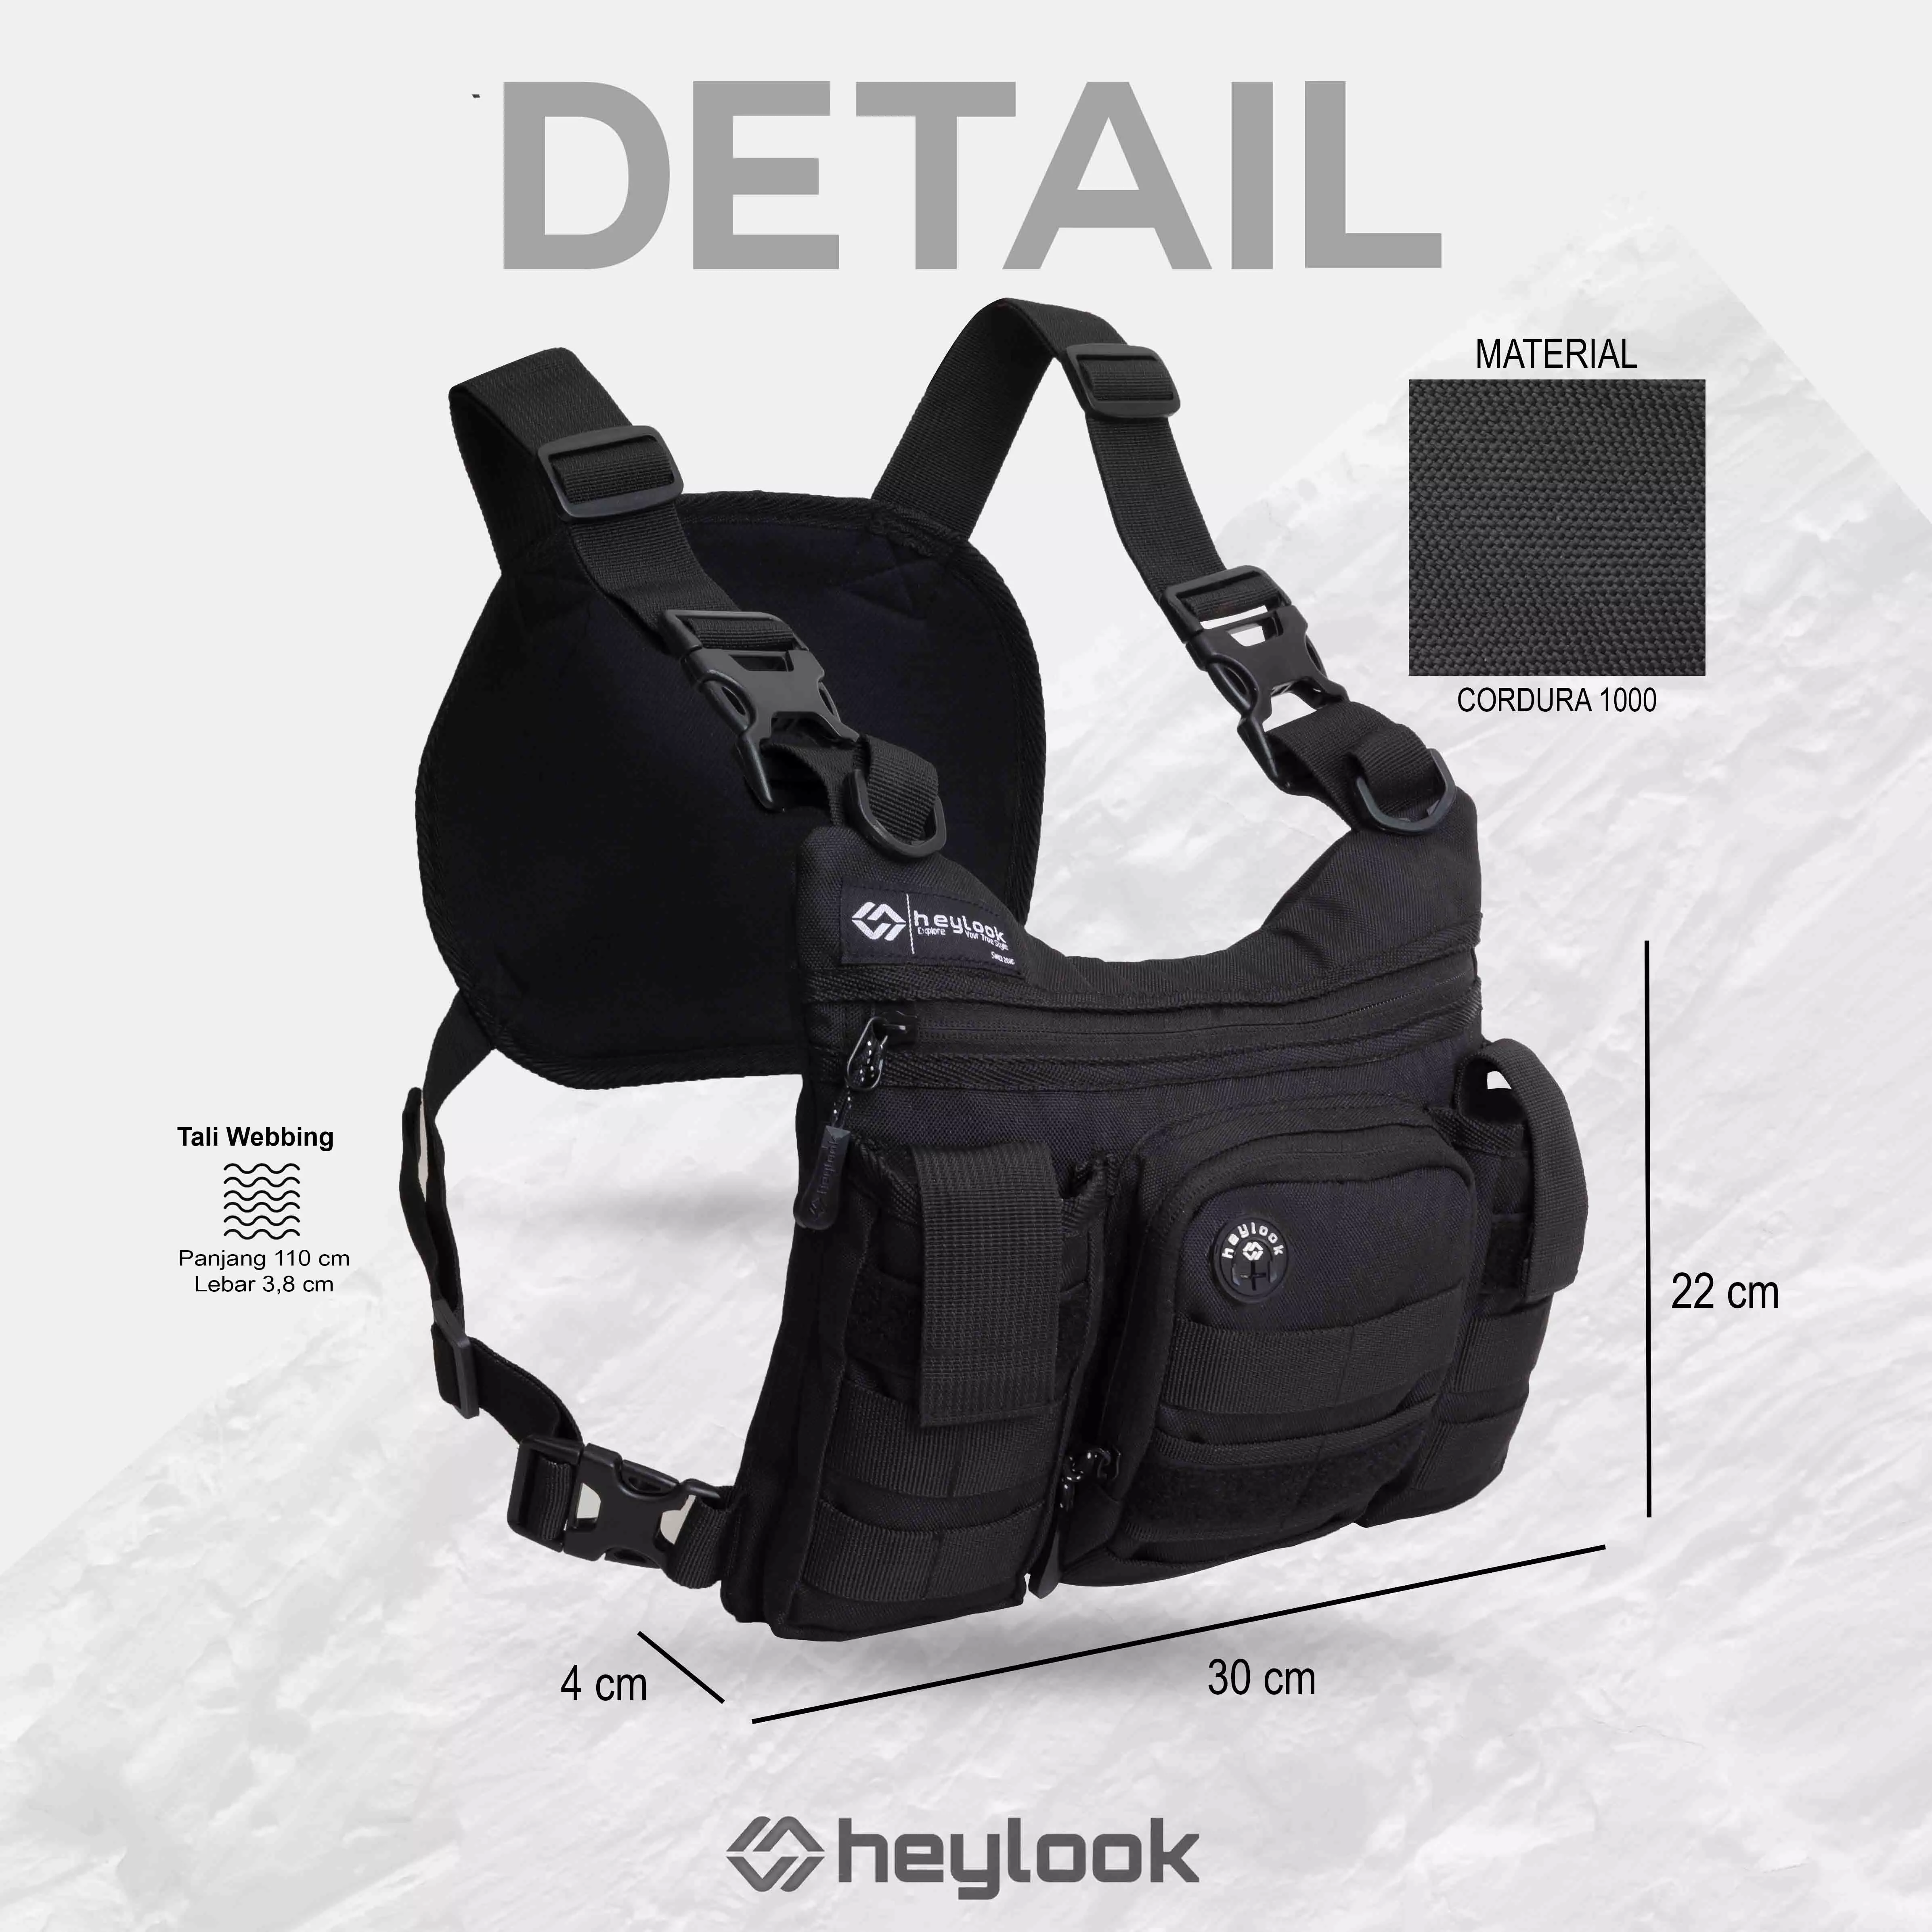 Promo HEYLOOK Official - Chest Bag Waterproof Raptor Tas Dada Tactical Rig  Bag Outdoor Diskon 62% di Seller HEYLOOK Official Store - HEYLOOK Official  Store - Kota Tangerang